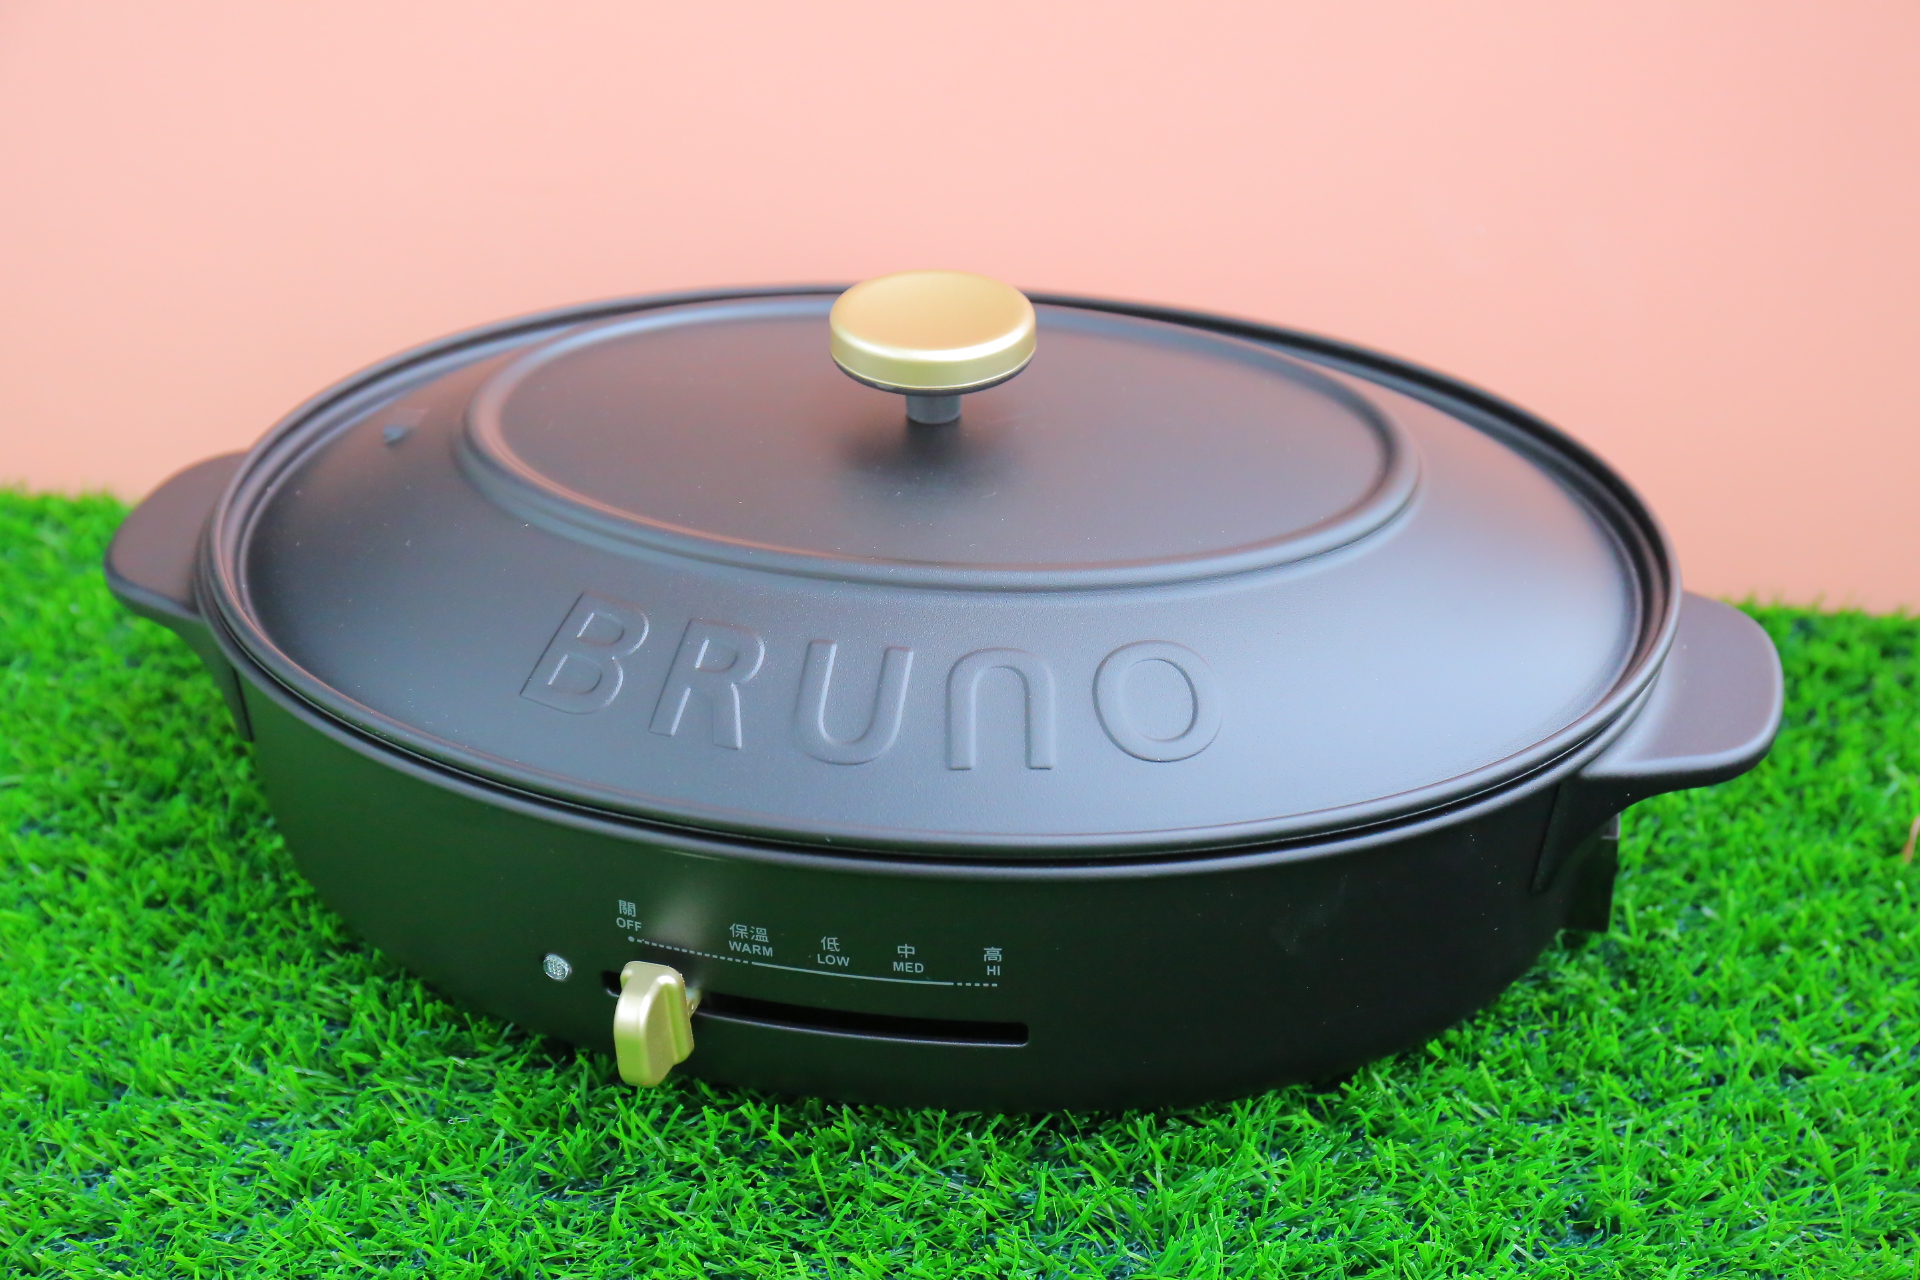 【Bruno橢圓電烤盤團購】最新最夯的電烤盤缺貨剛到!你們想要搶就要比手快了! @小環妞 幸福足跡